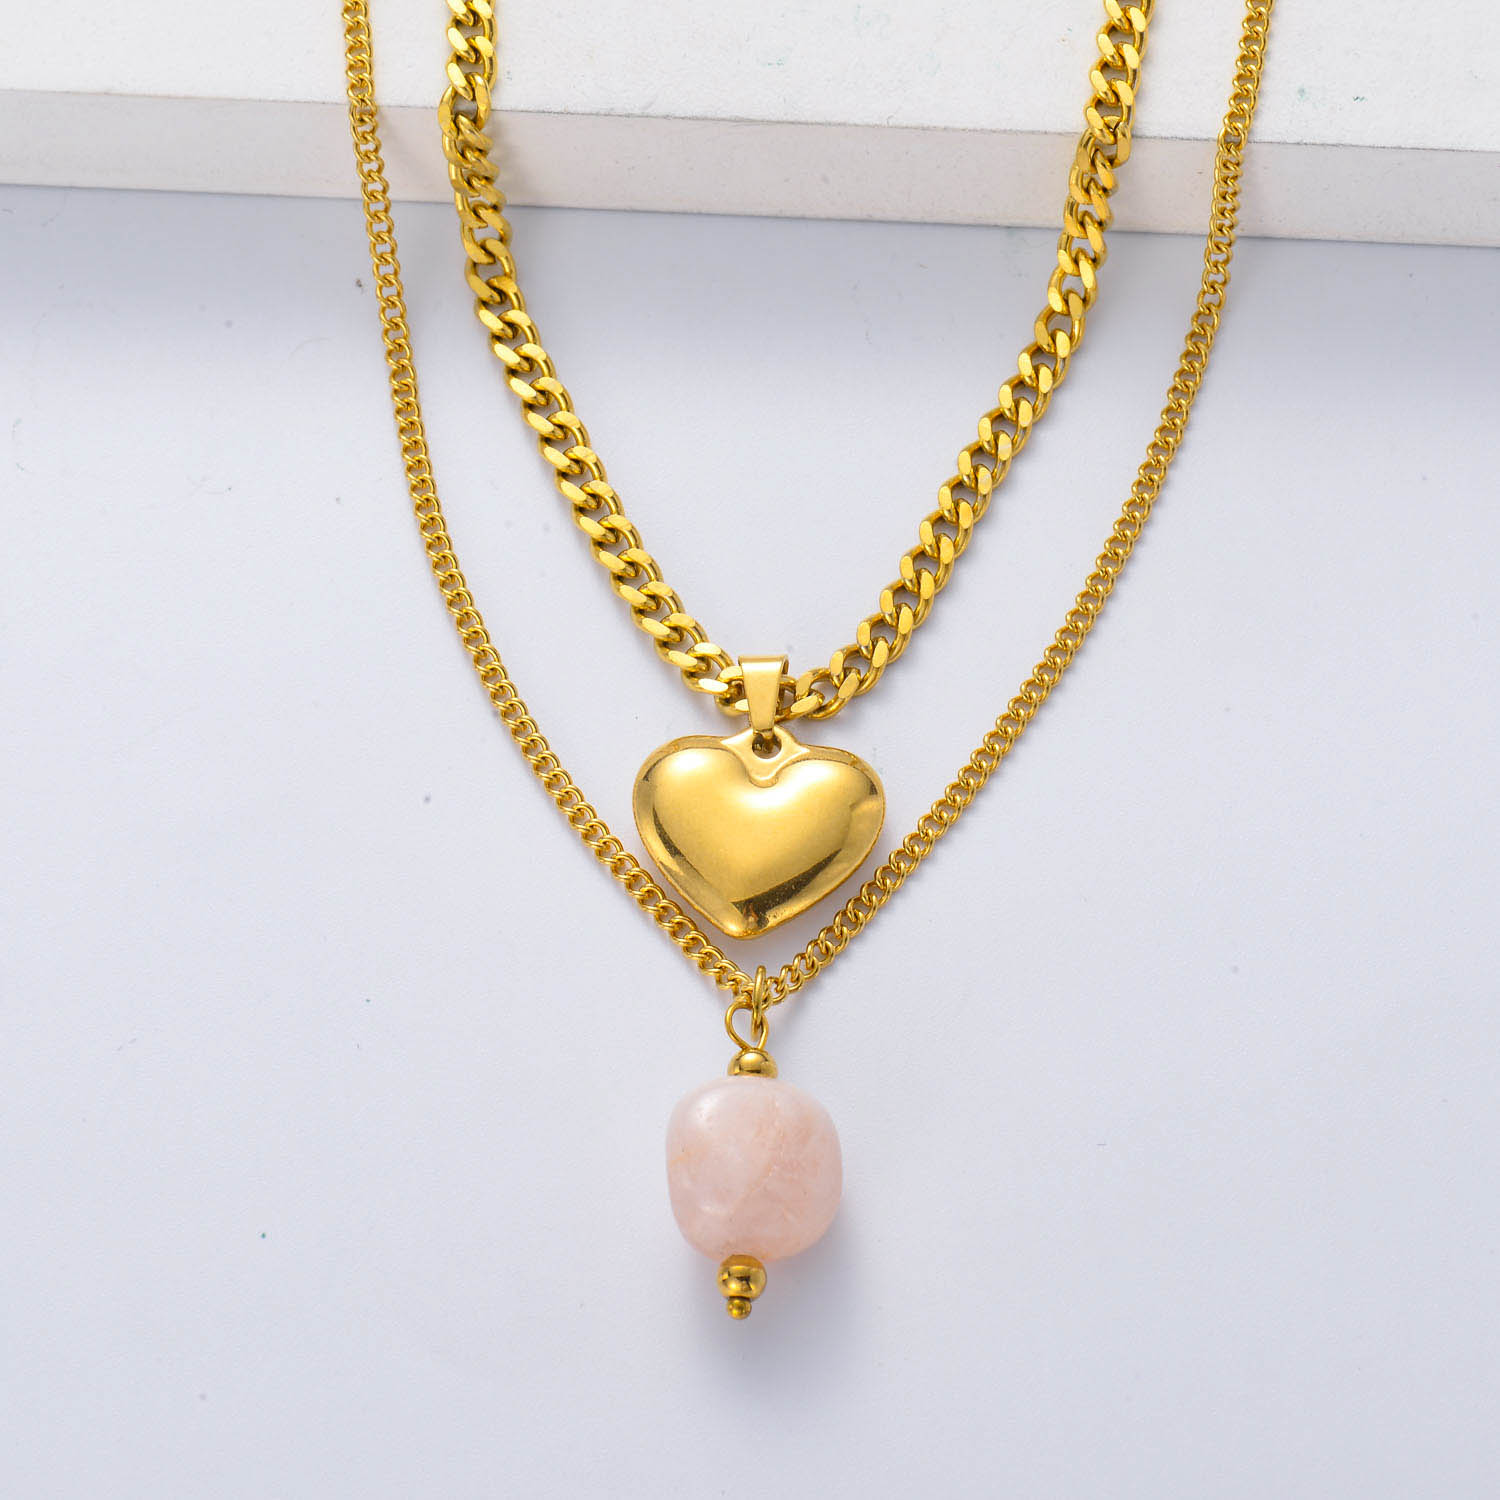 collar de pareja acero color dorado con dije de corazoncito piedra natural semi precious cuarzo rosa doble cadena diseno nuevo